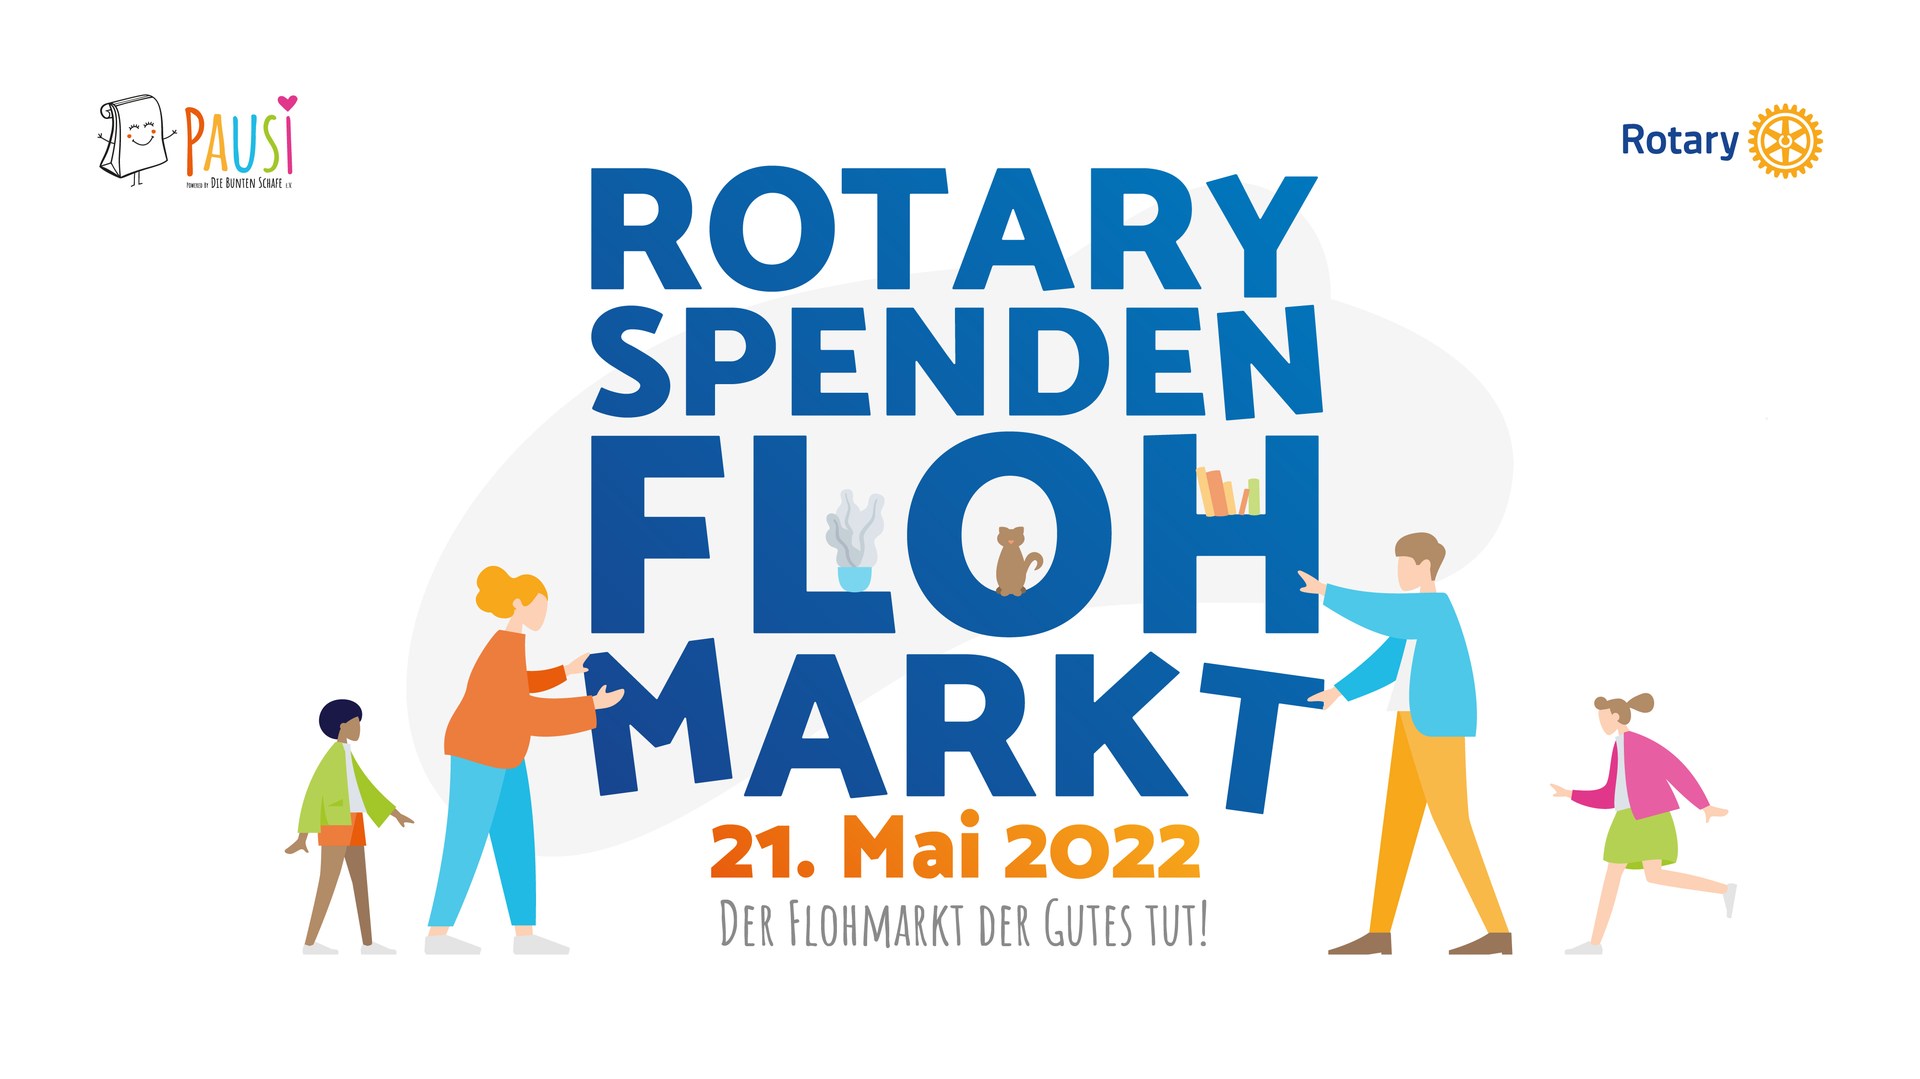 Rotary Club Erfurt veranstaltet 1. Spenden-Flohmarkt